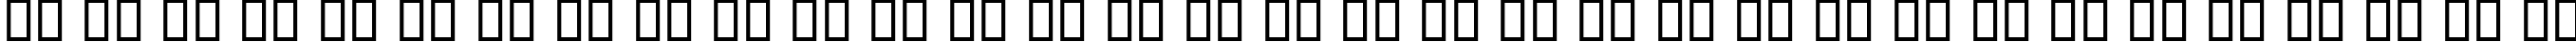 Пример написания русского алфавита шрифтом B Elm Italic